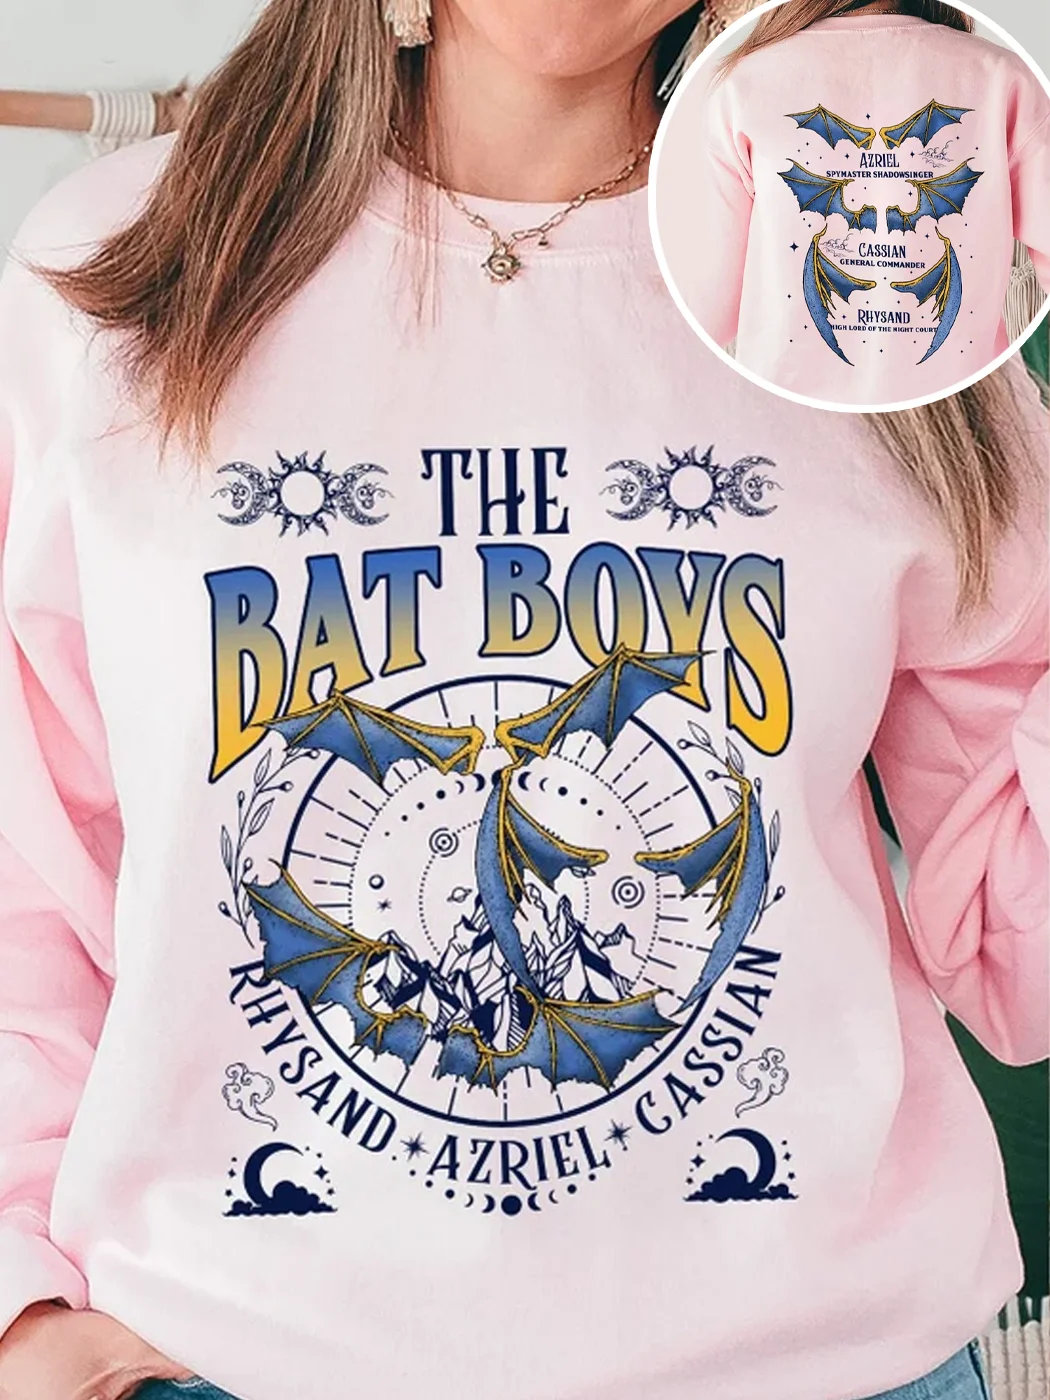 The Bat Boys Acotar Sweatshirt / DarkAcademias /Darkacademias